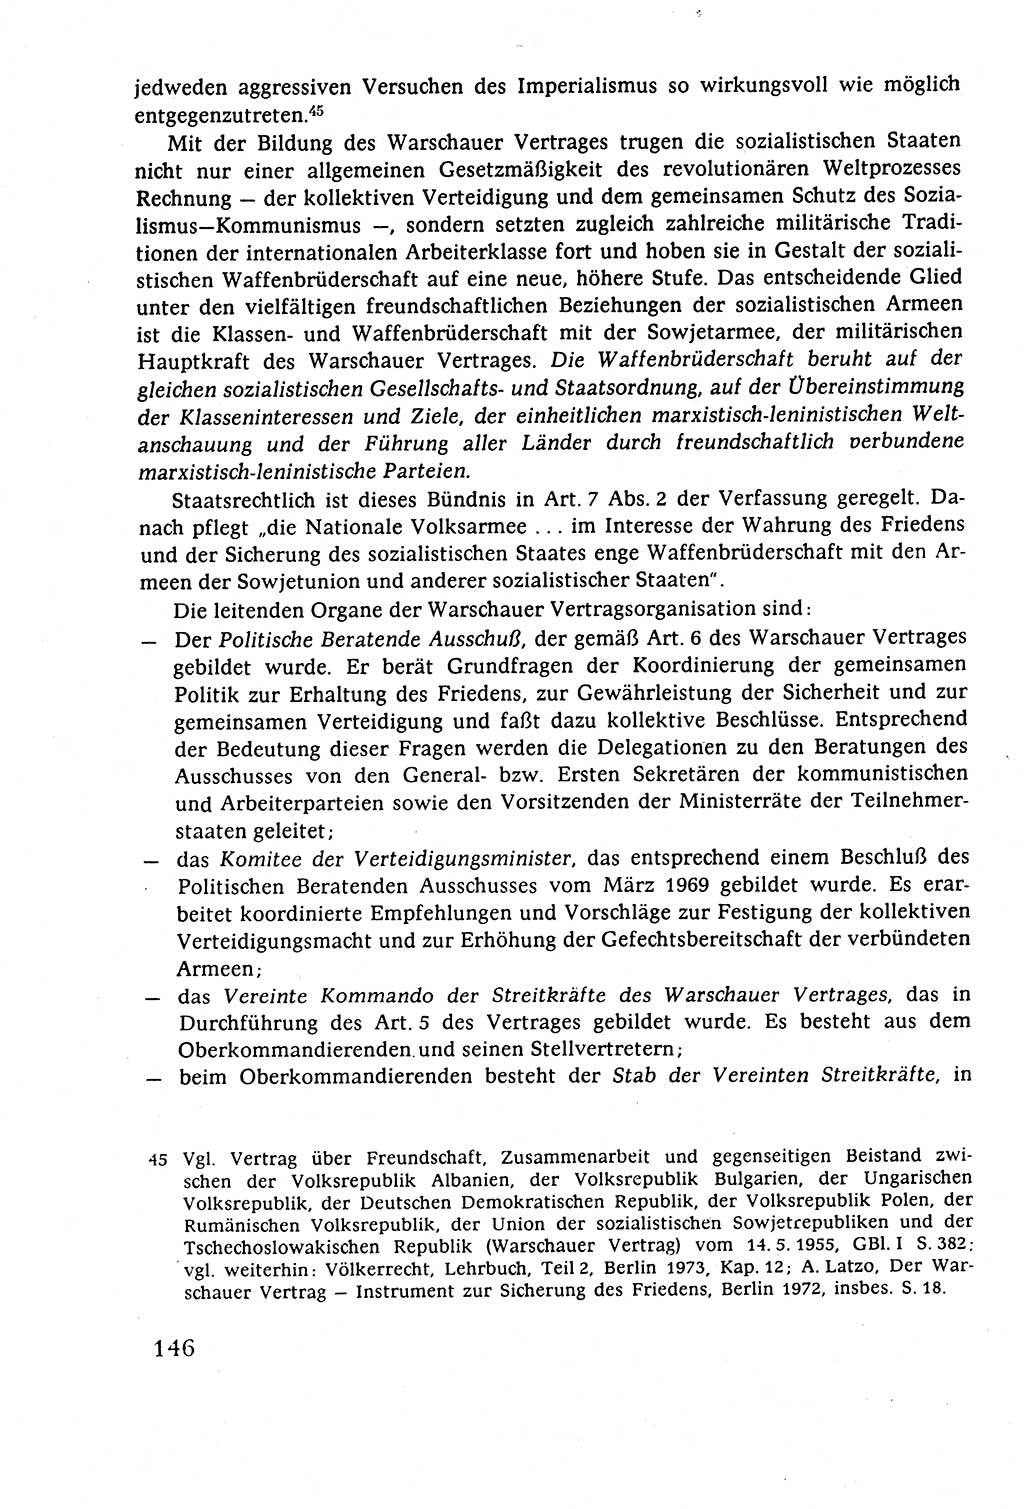 Staatsrecht der DDR (Deutsche Demokratische Republik), Lehrbuch 1977, Seite 146 (St.-R. DDR Lb. 1977, S. 146)